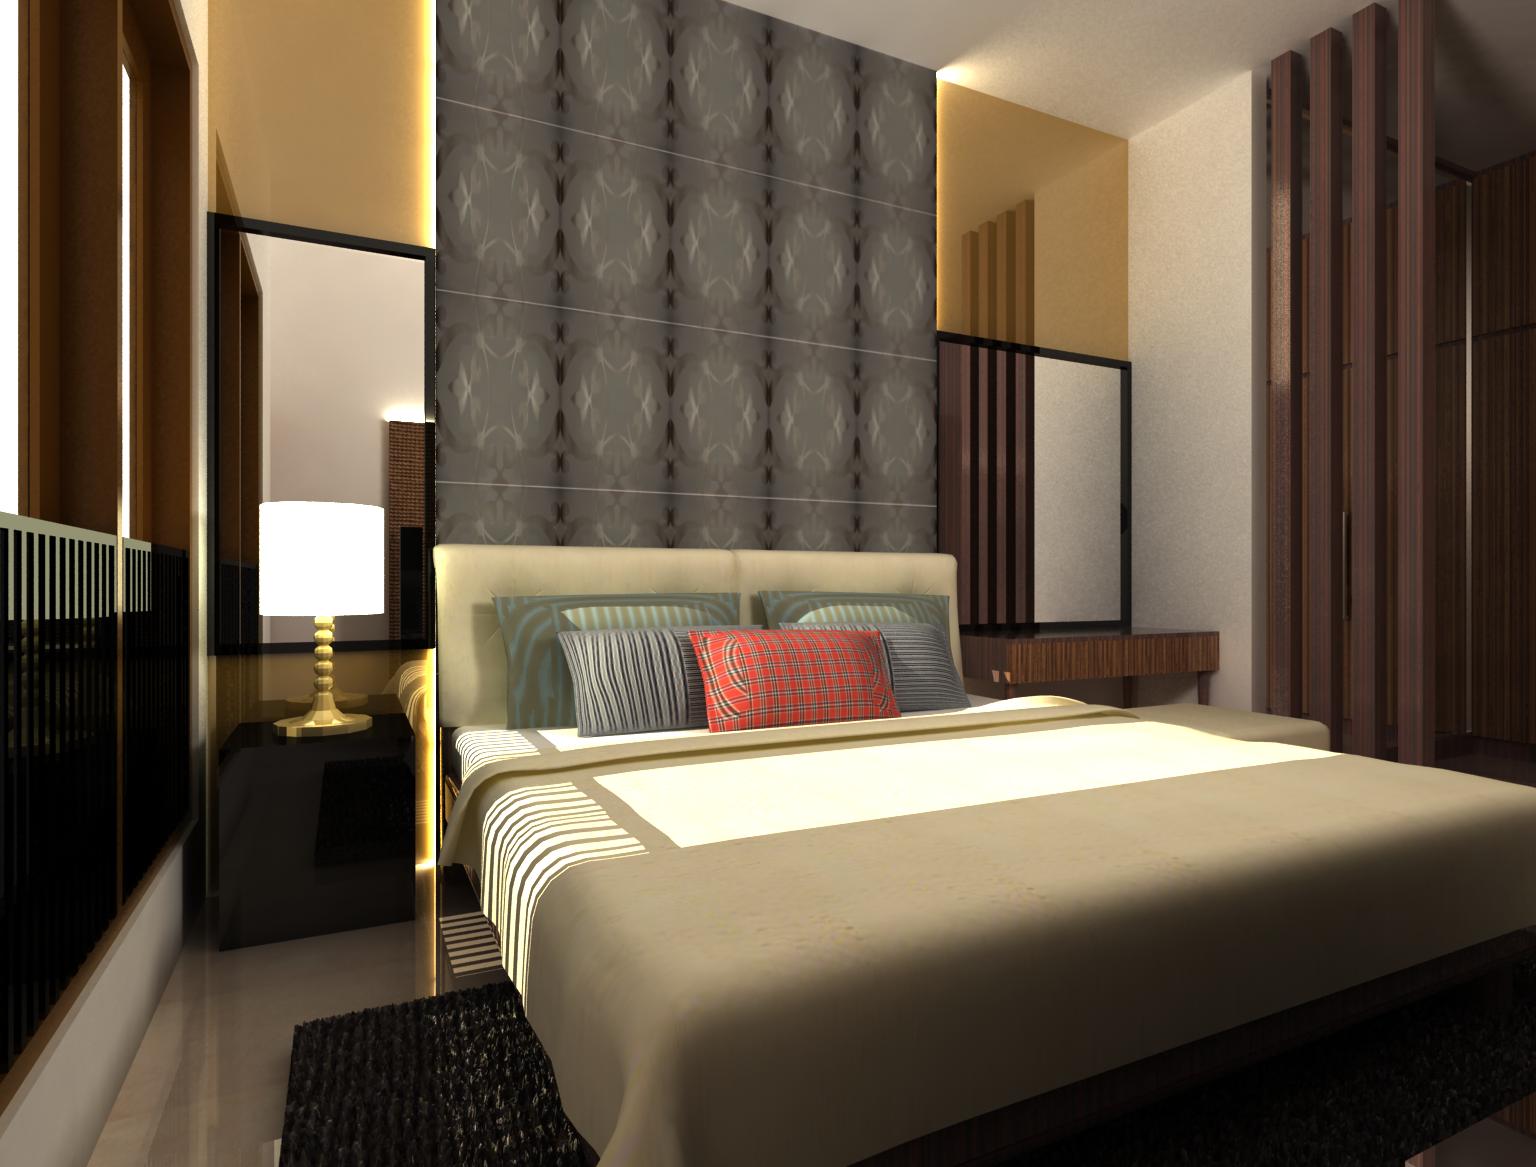 Desain Interior Kamar Tidur Model Rumah Terbaru Minimalis 2014